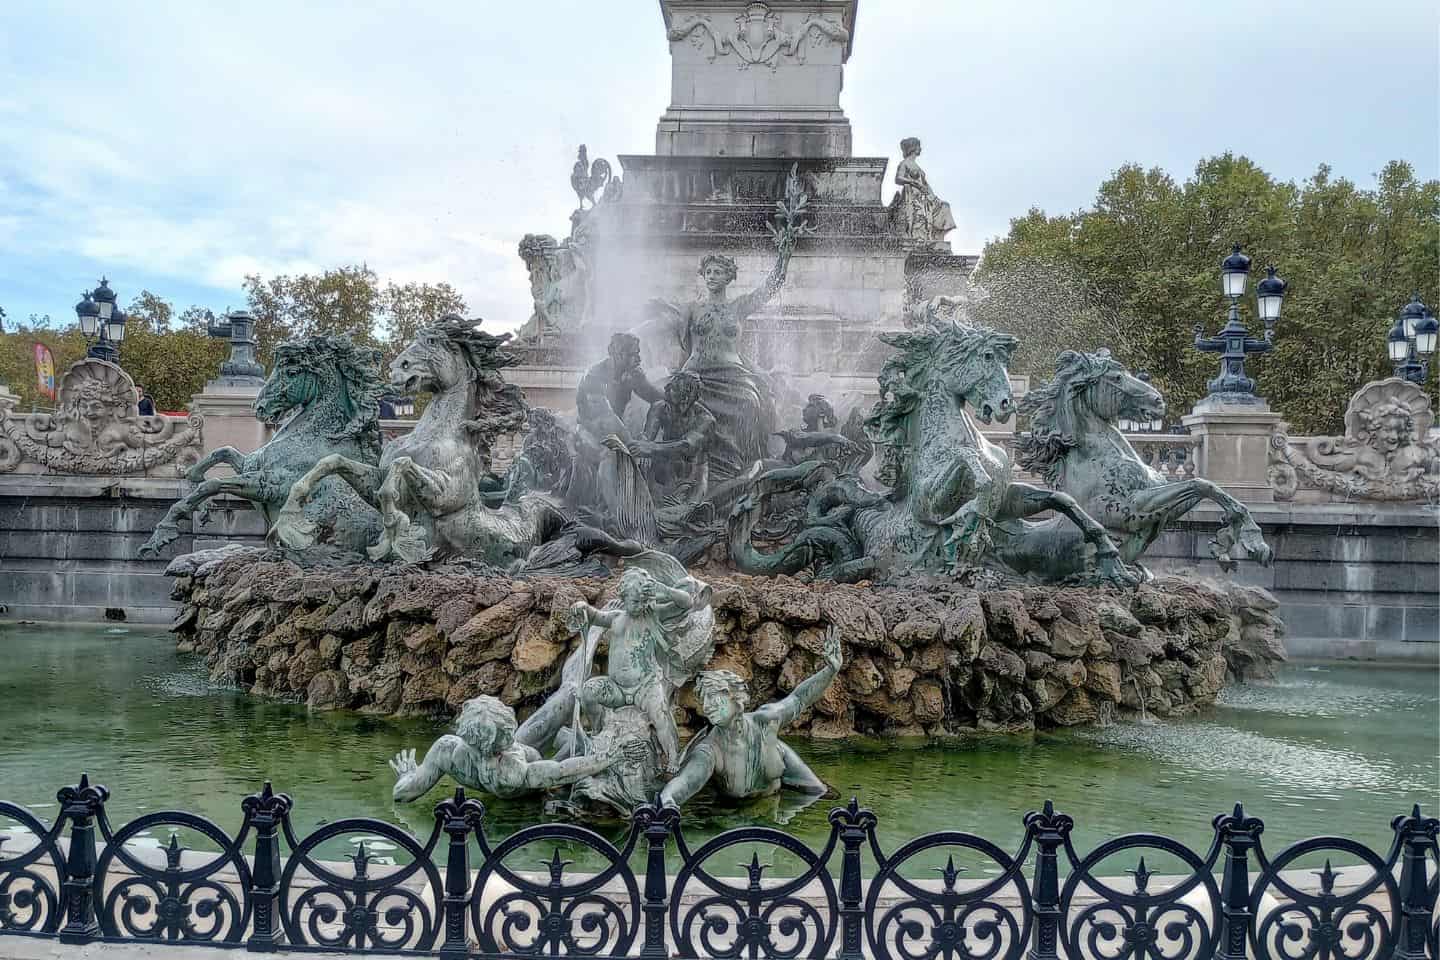 An ornate bronze fountain